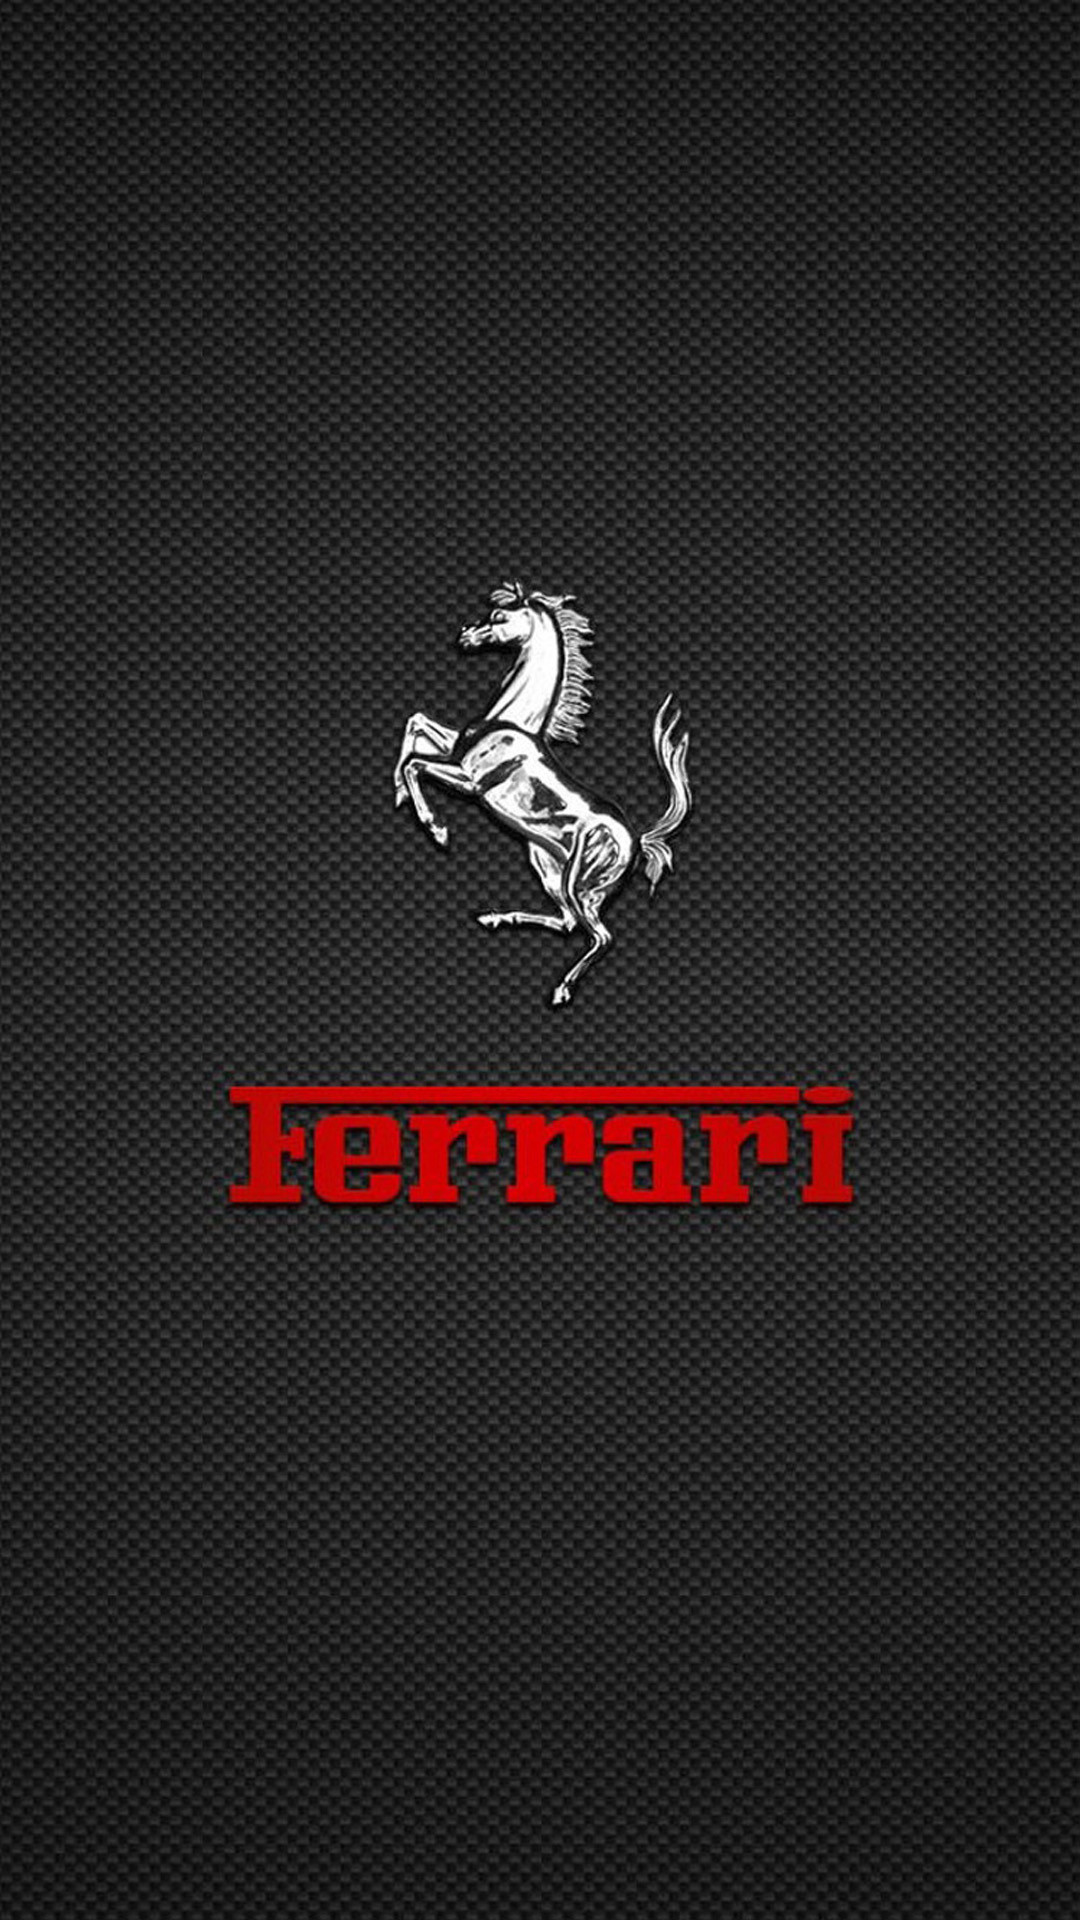 1080x1920 Image for Ferrari Logo Wallpaper Wallpaper For Mac #qikvn